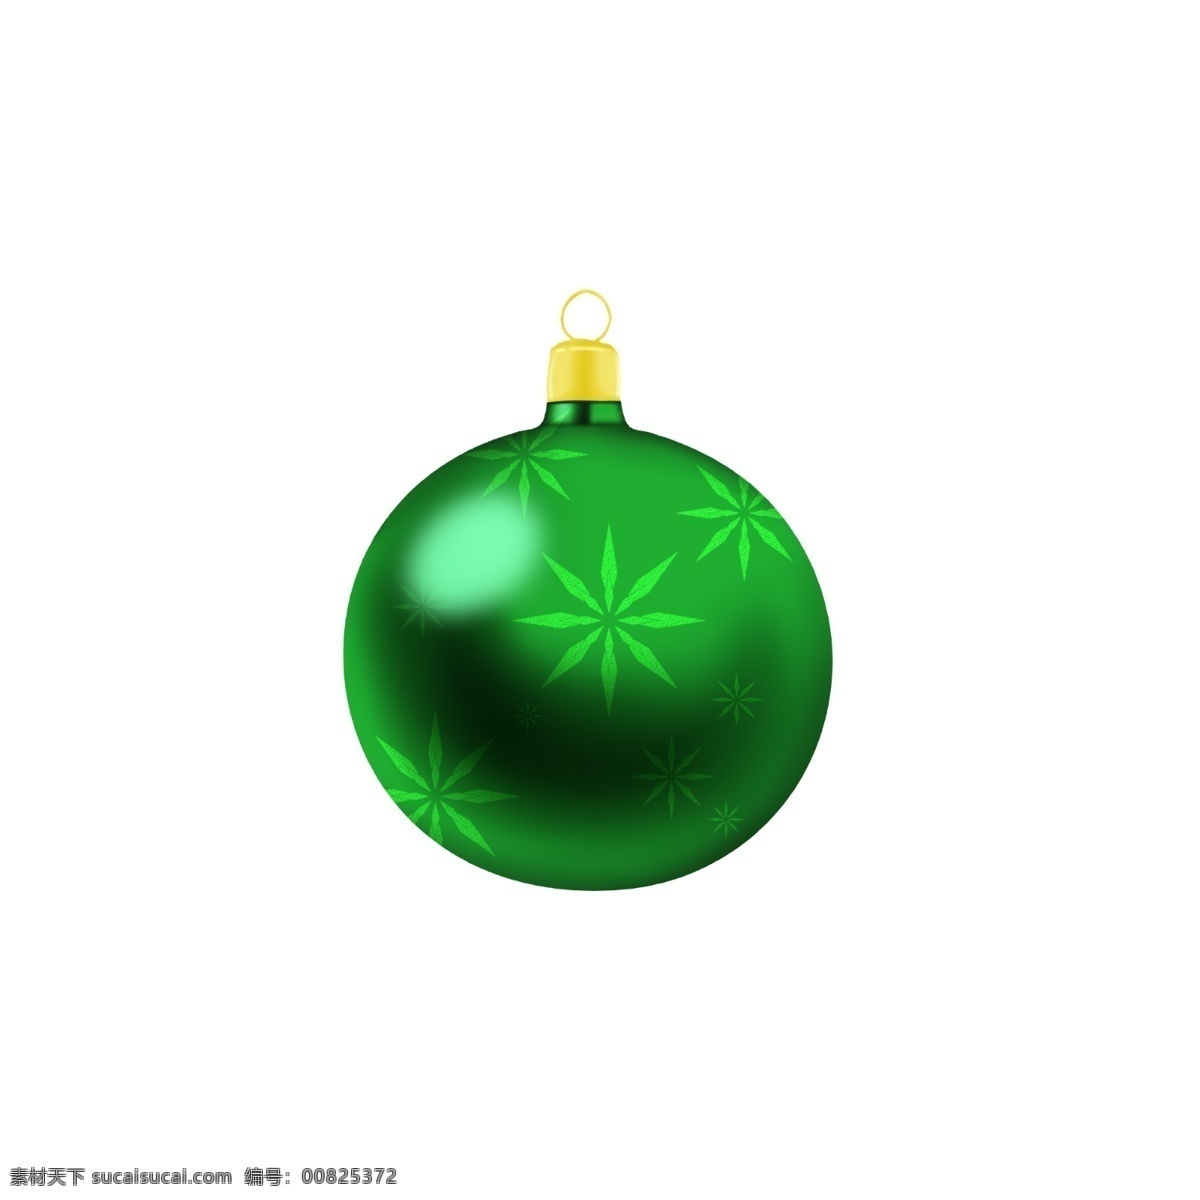 手绘 圣诞 装饰 球 绿色 雪花 创意 商用 元素 圣诞节 可爱 手绘风 平安夜 写实 配图 可商用